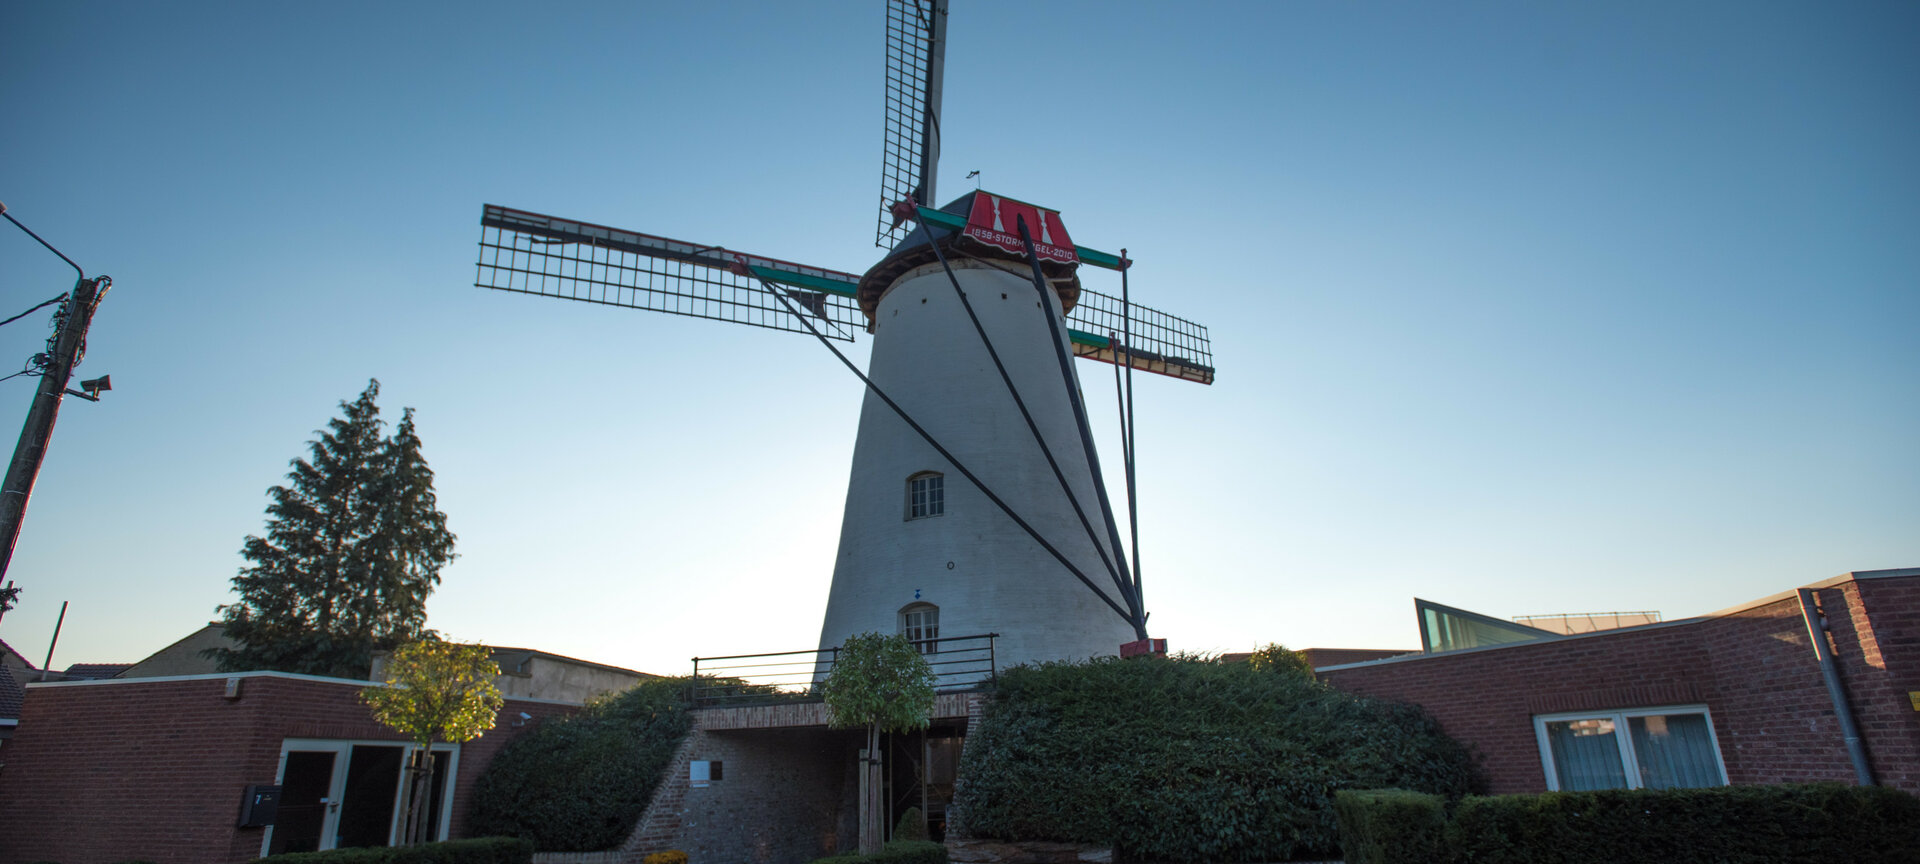 Molen 'De Stormvogel' - Wind Mill Entrance